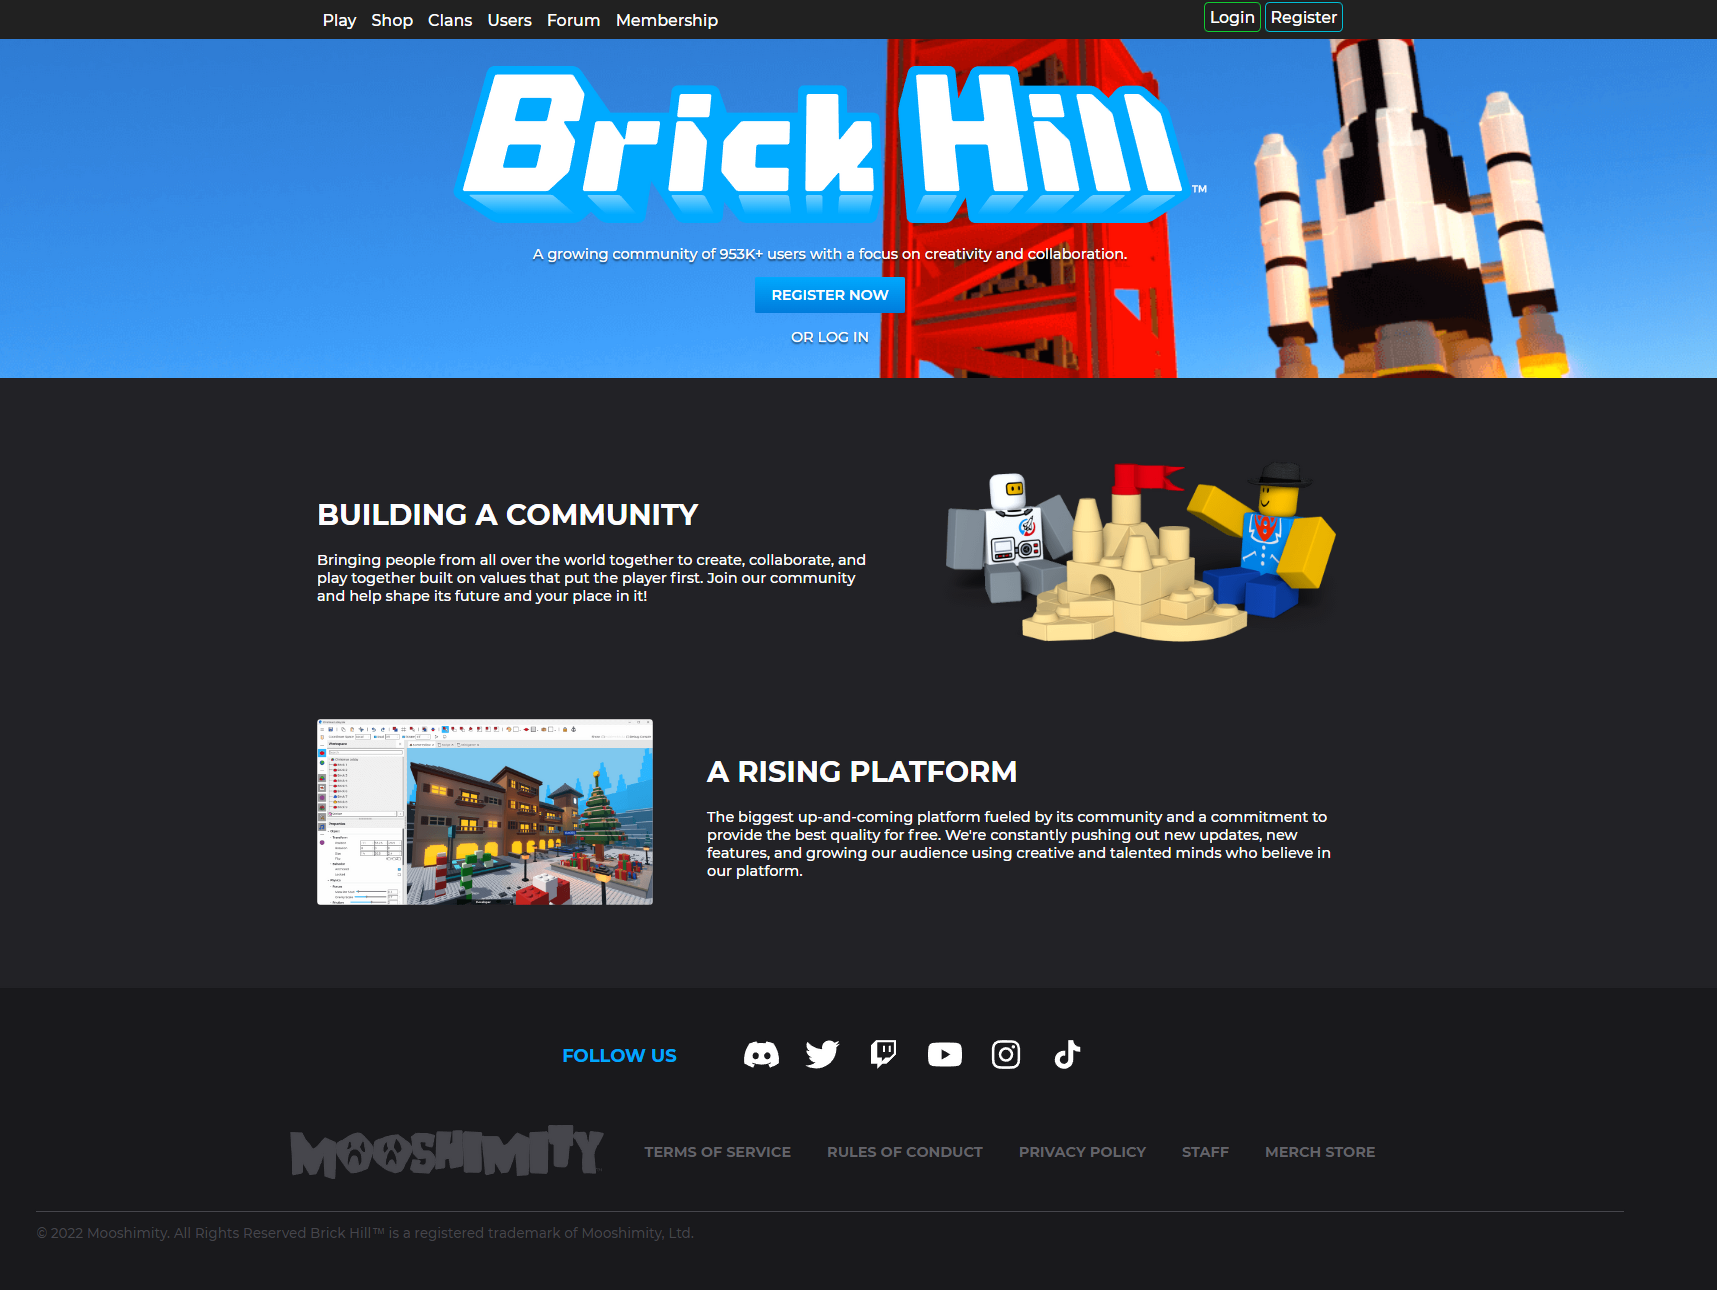 How download brick hill - Brick Hill